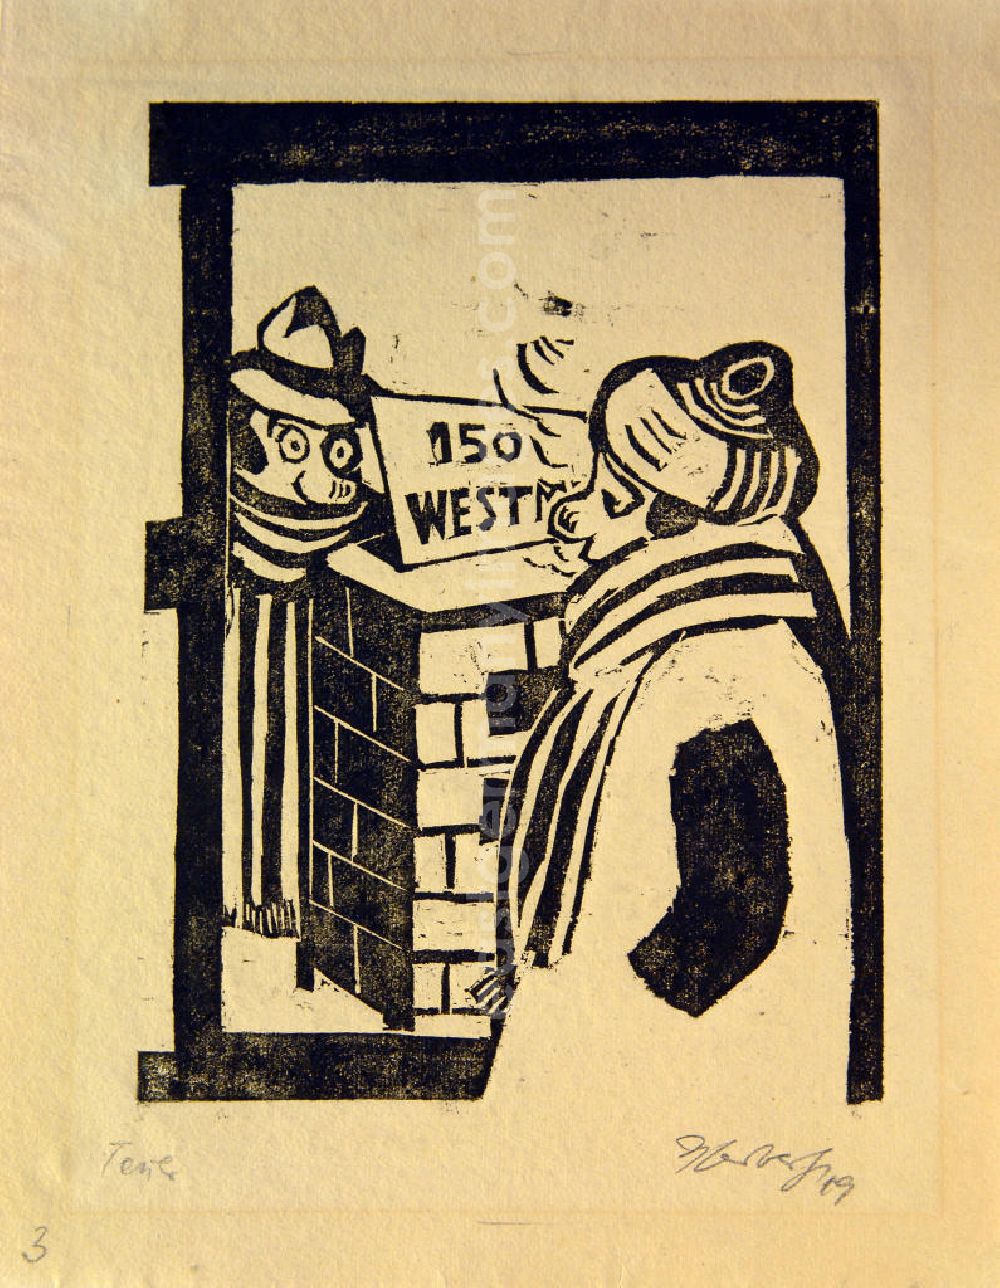 GDR photo archive: Berlin - Grafik von Herbert Sandberg Teuer aus dem Jahr 1949, 24,0x17,5cm Holzschnitt, handsigniert. Im Vordergrund: Person in der Seitenansicht, warm angezogen, mit Mütze und Schal; im Mittelgrund: Kohlestapel, darauf 15